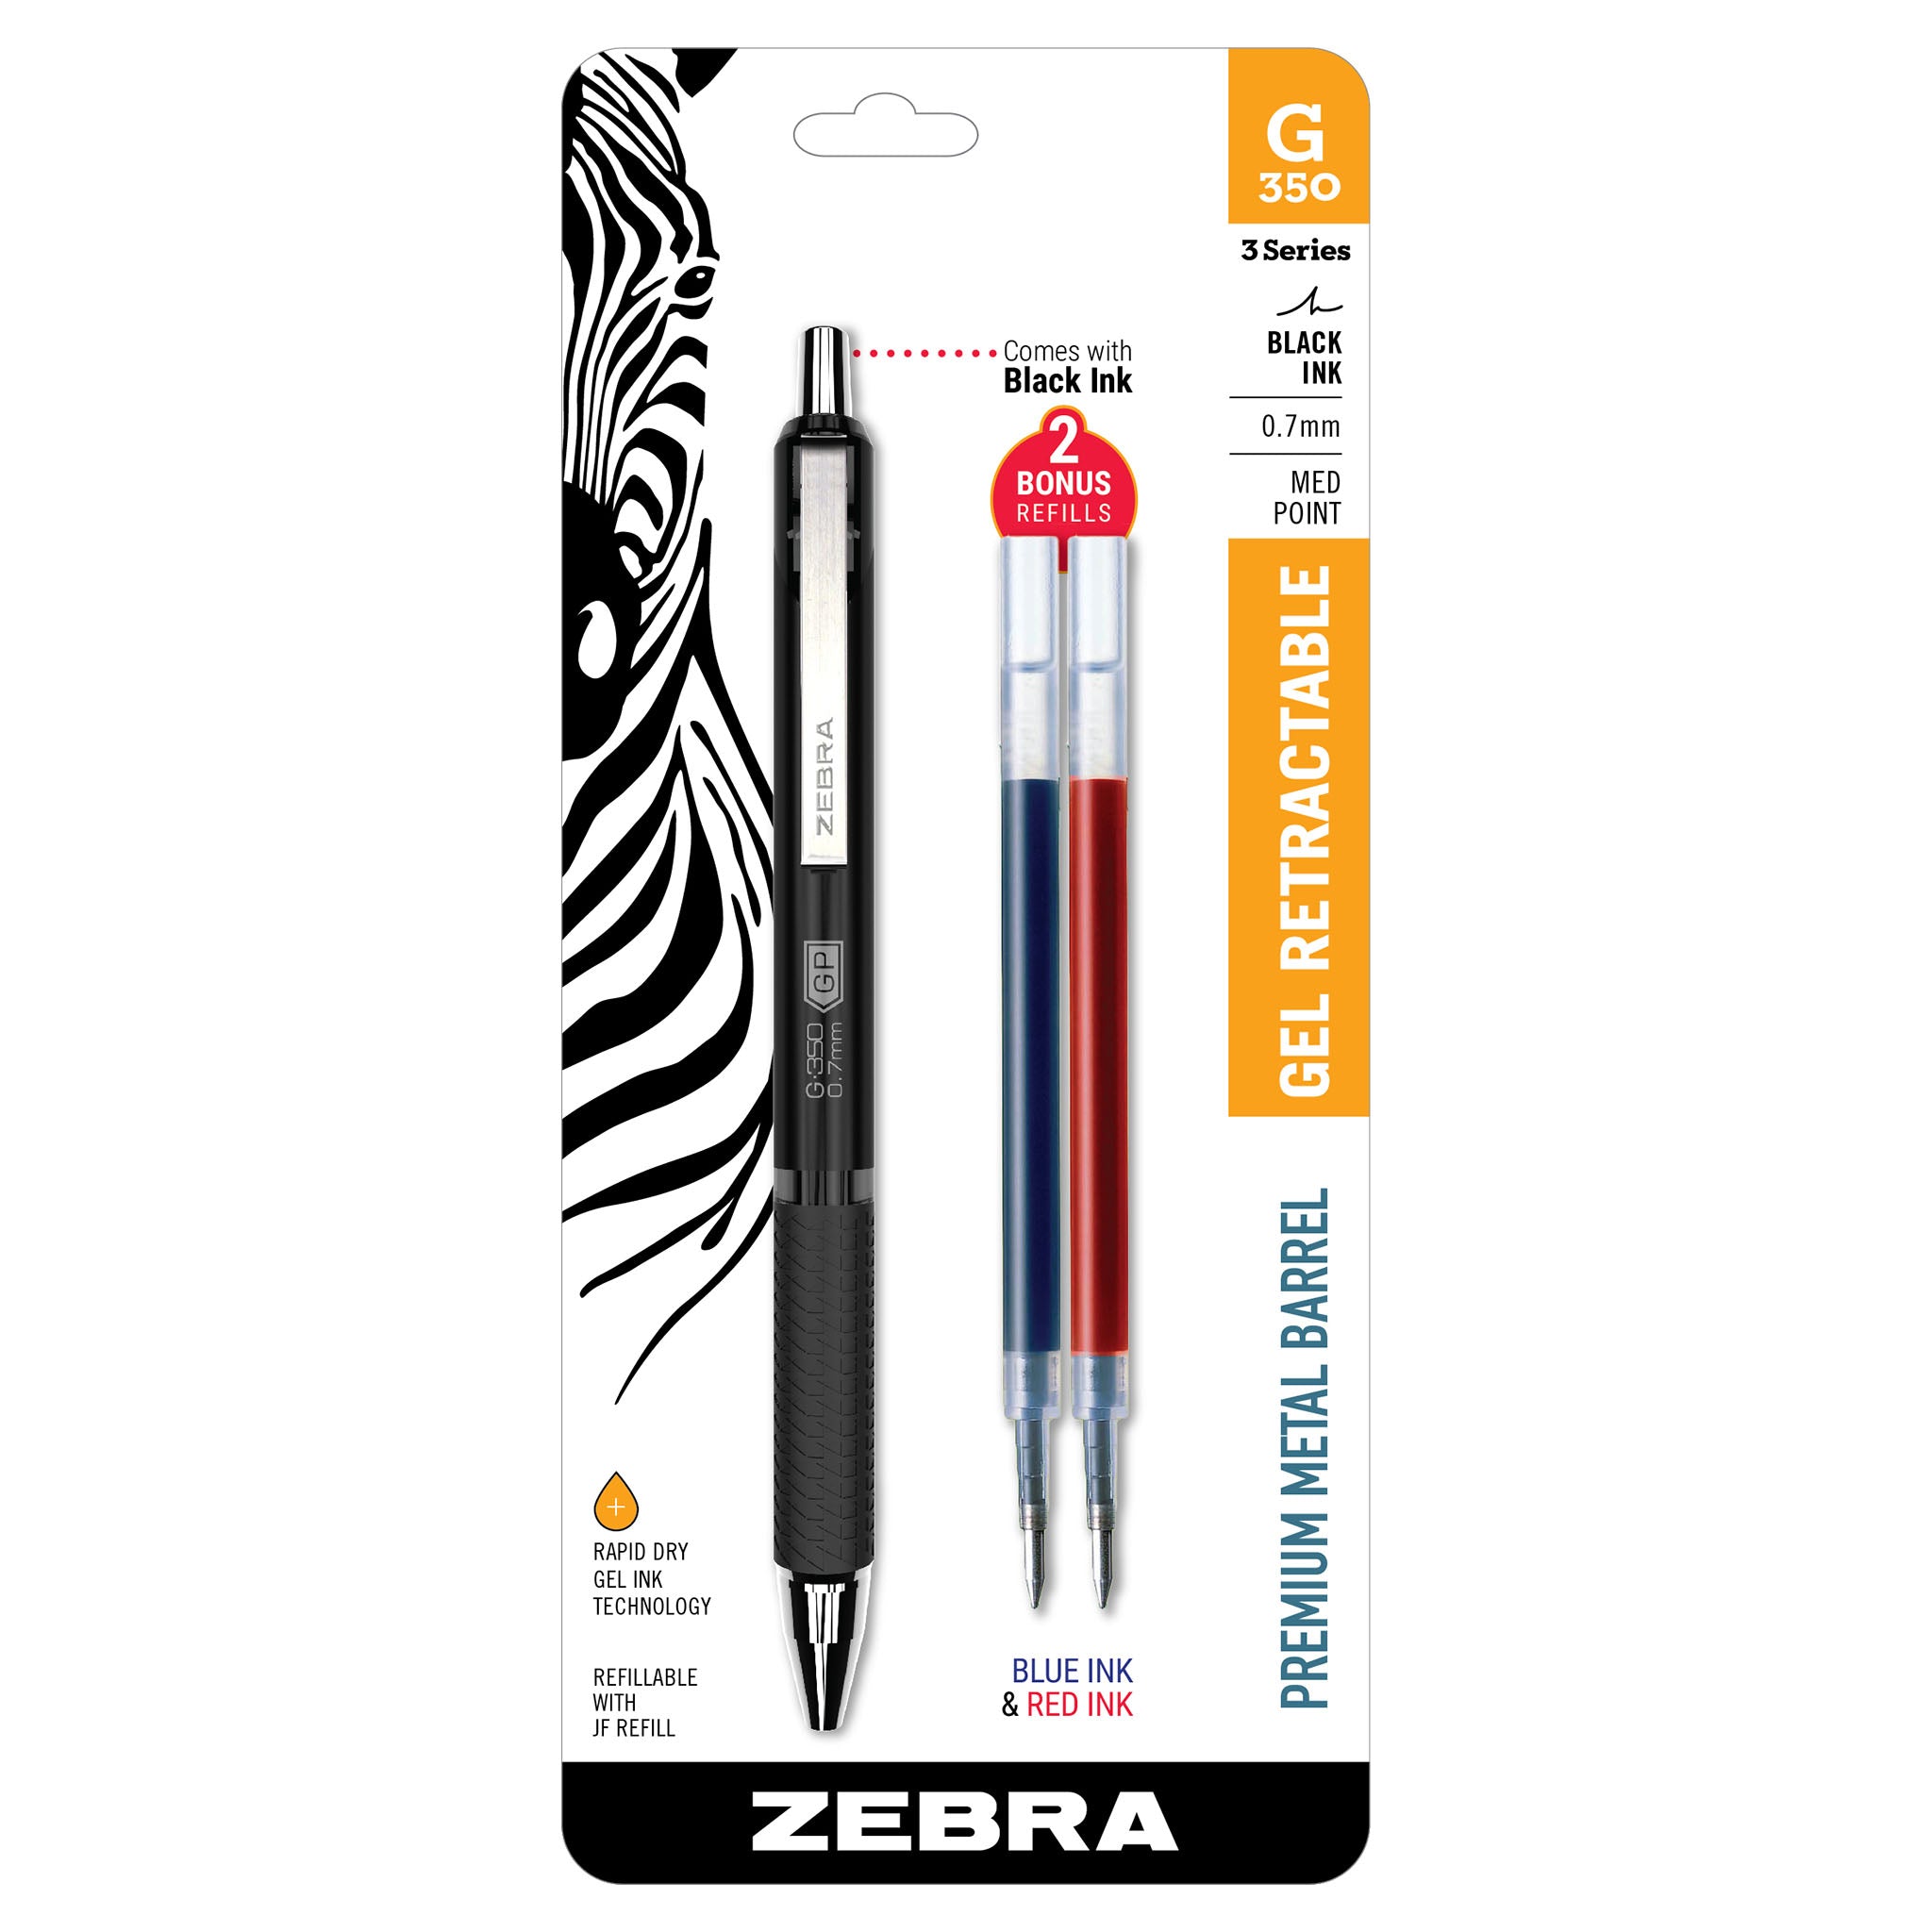 G-350 Gel Retractable Pen | Zebra Pen